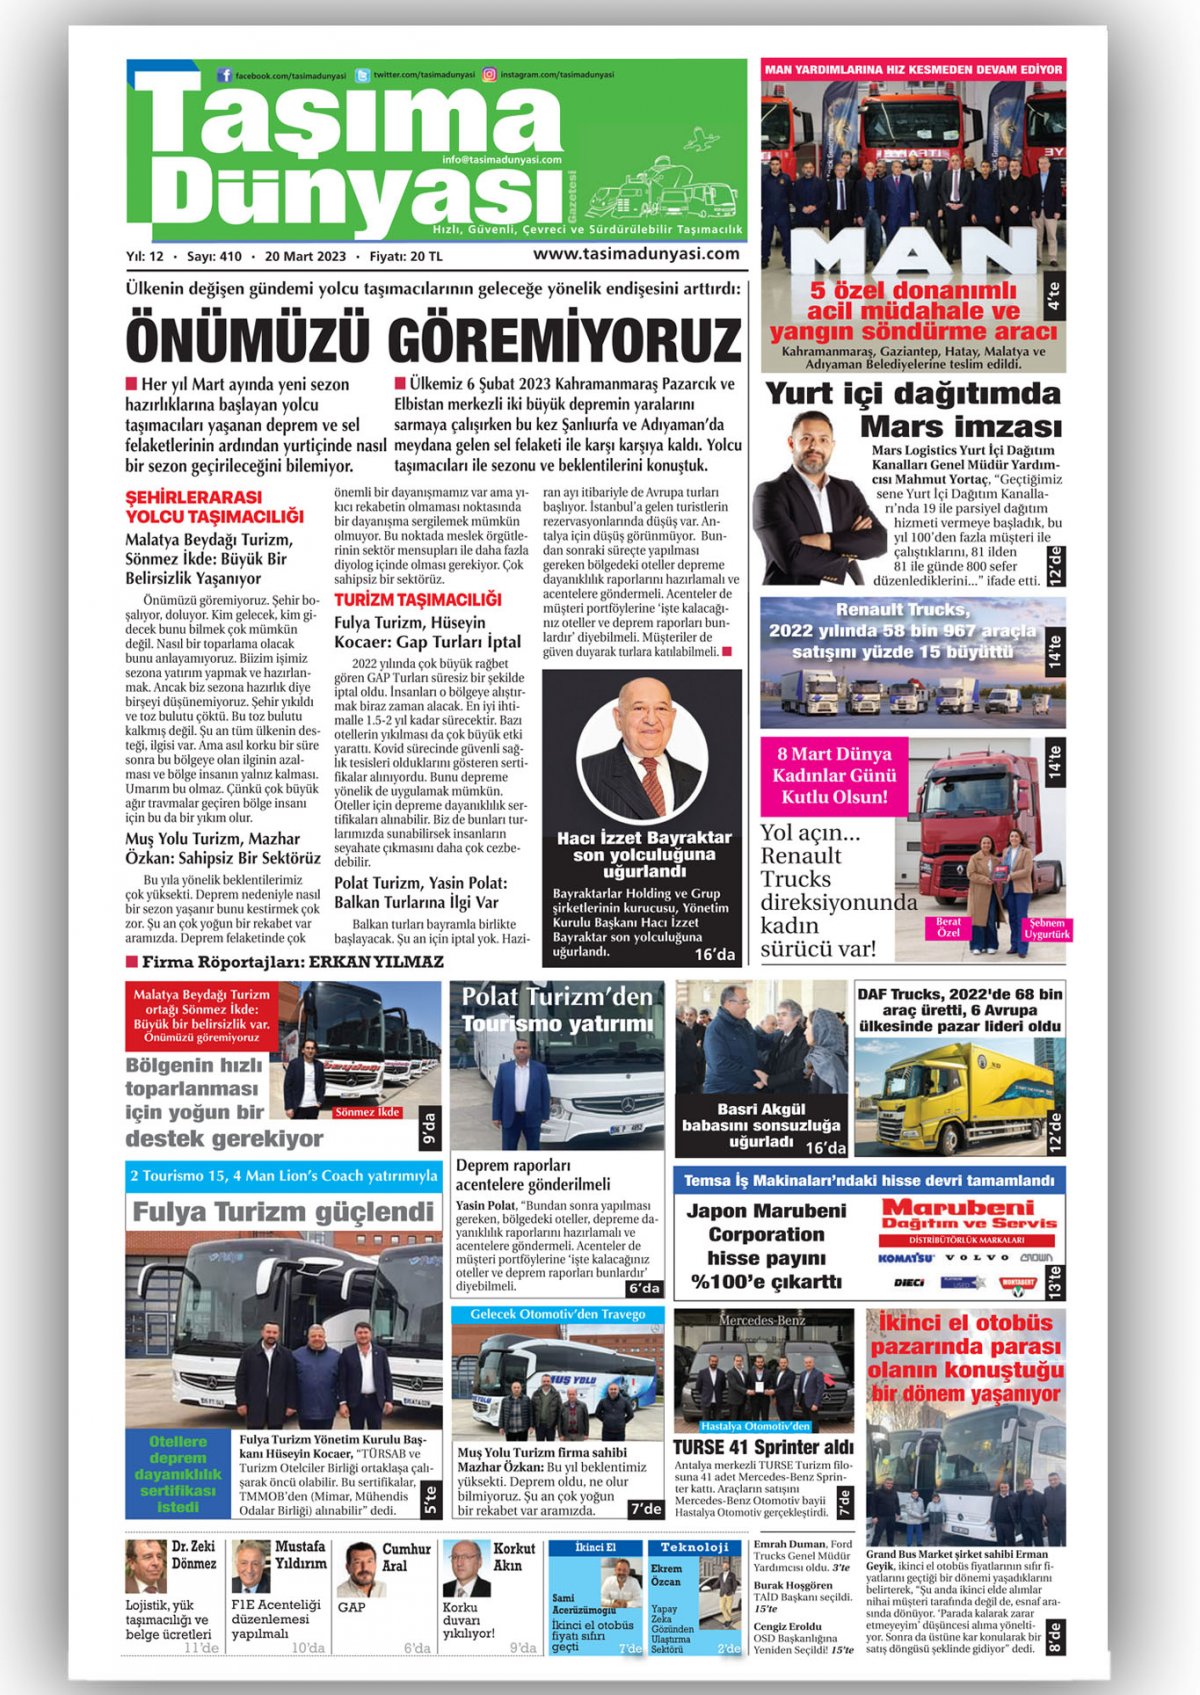 Taşıma Dünyası Gazetesi - 20.03.2023 Manşeti